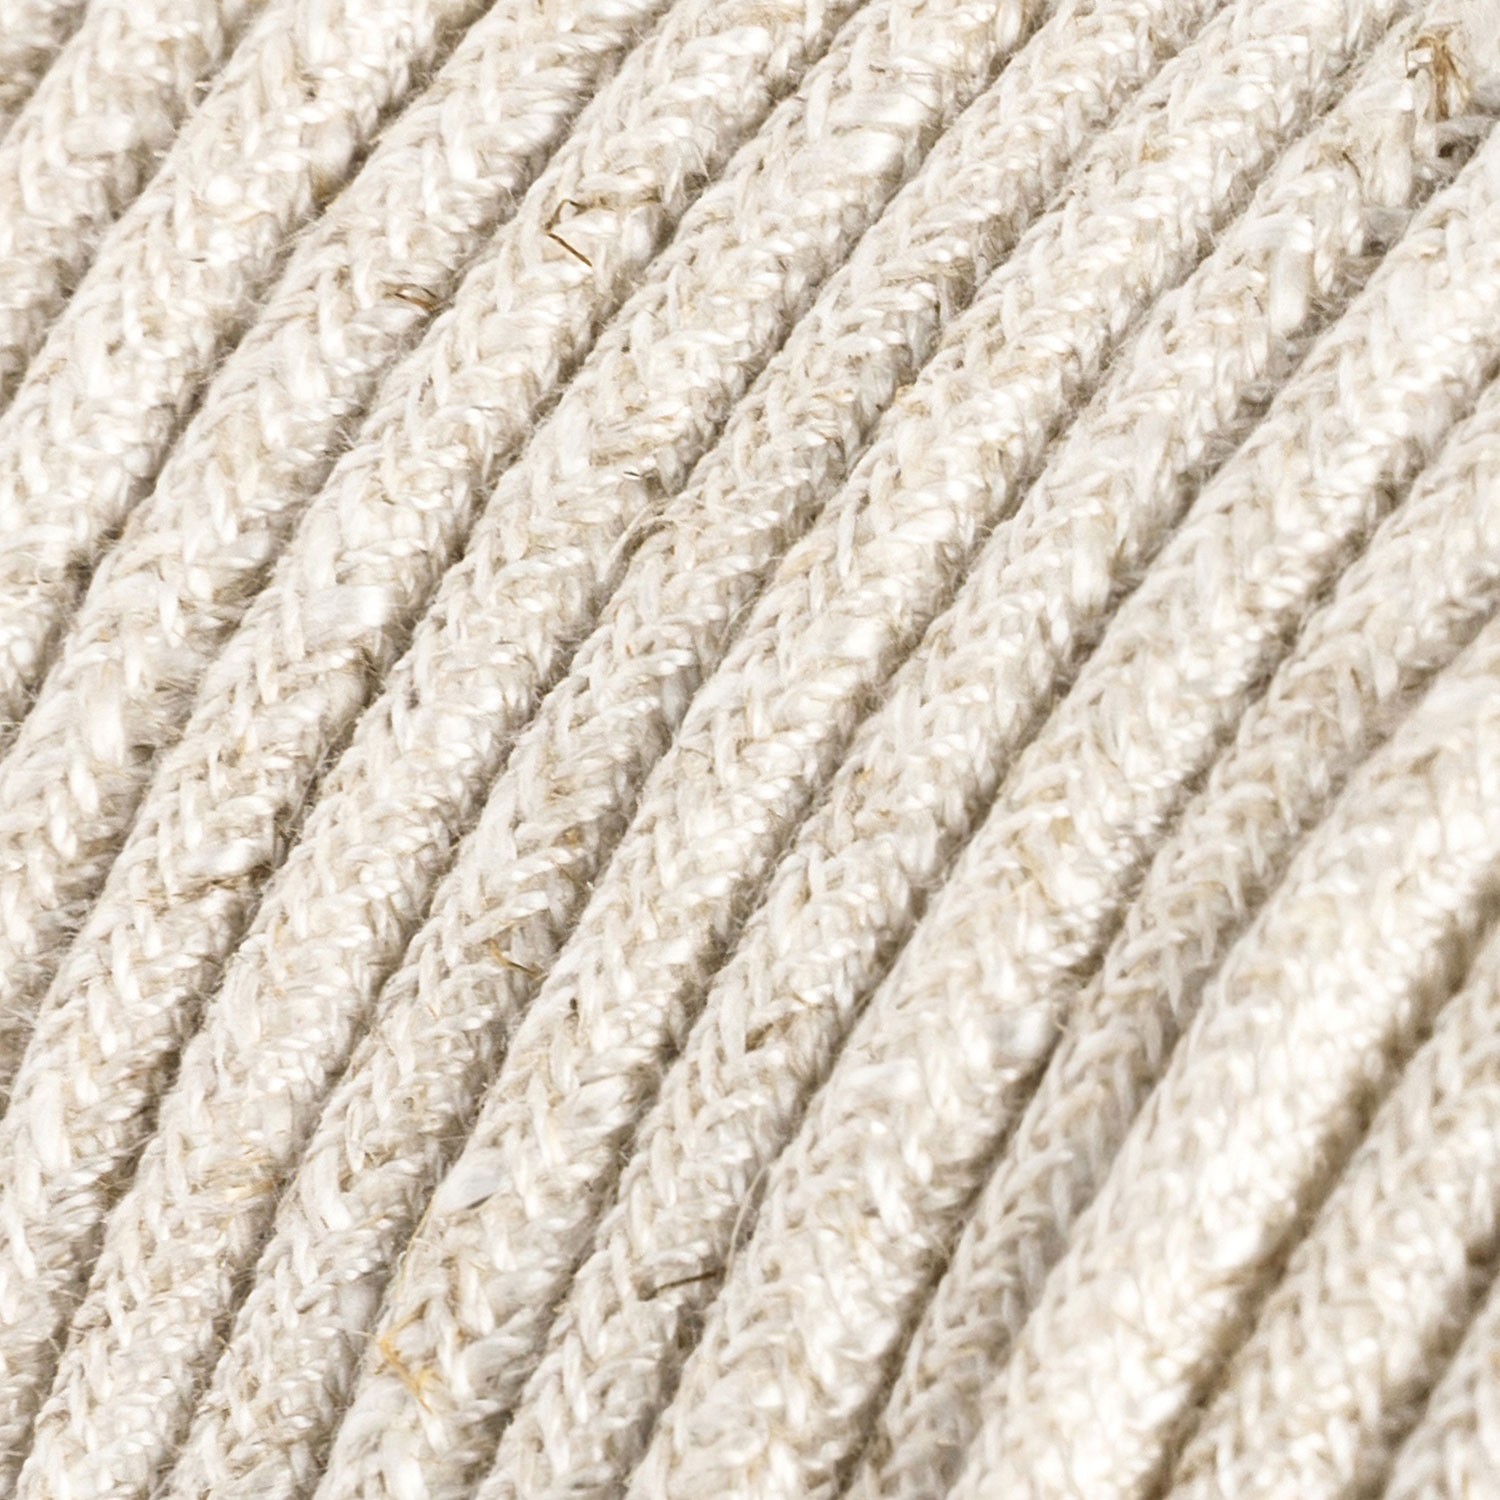 Textilkabel, weiß meliert, aus Leinen - Das Original von Creative-Cables - RN01 rund 2x0,75mm / 3x0,75mm